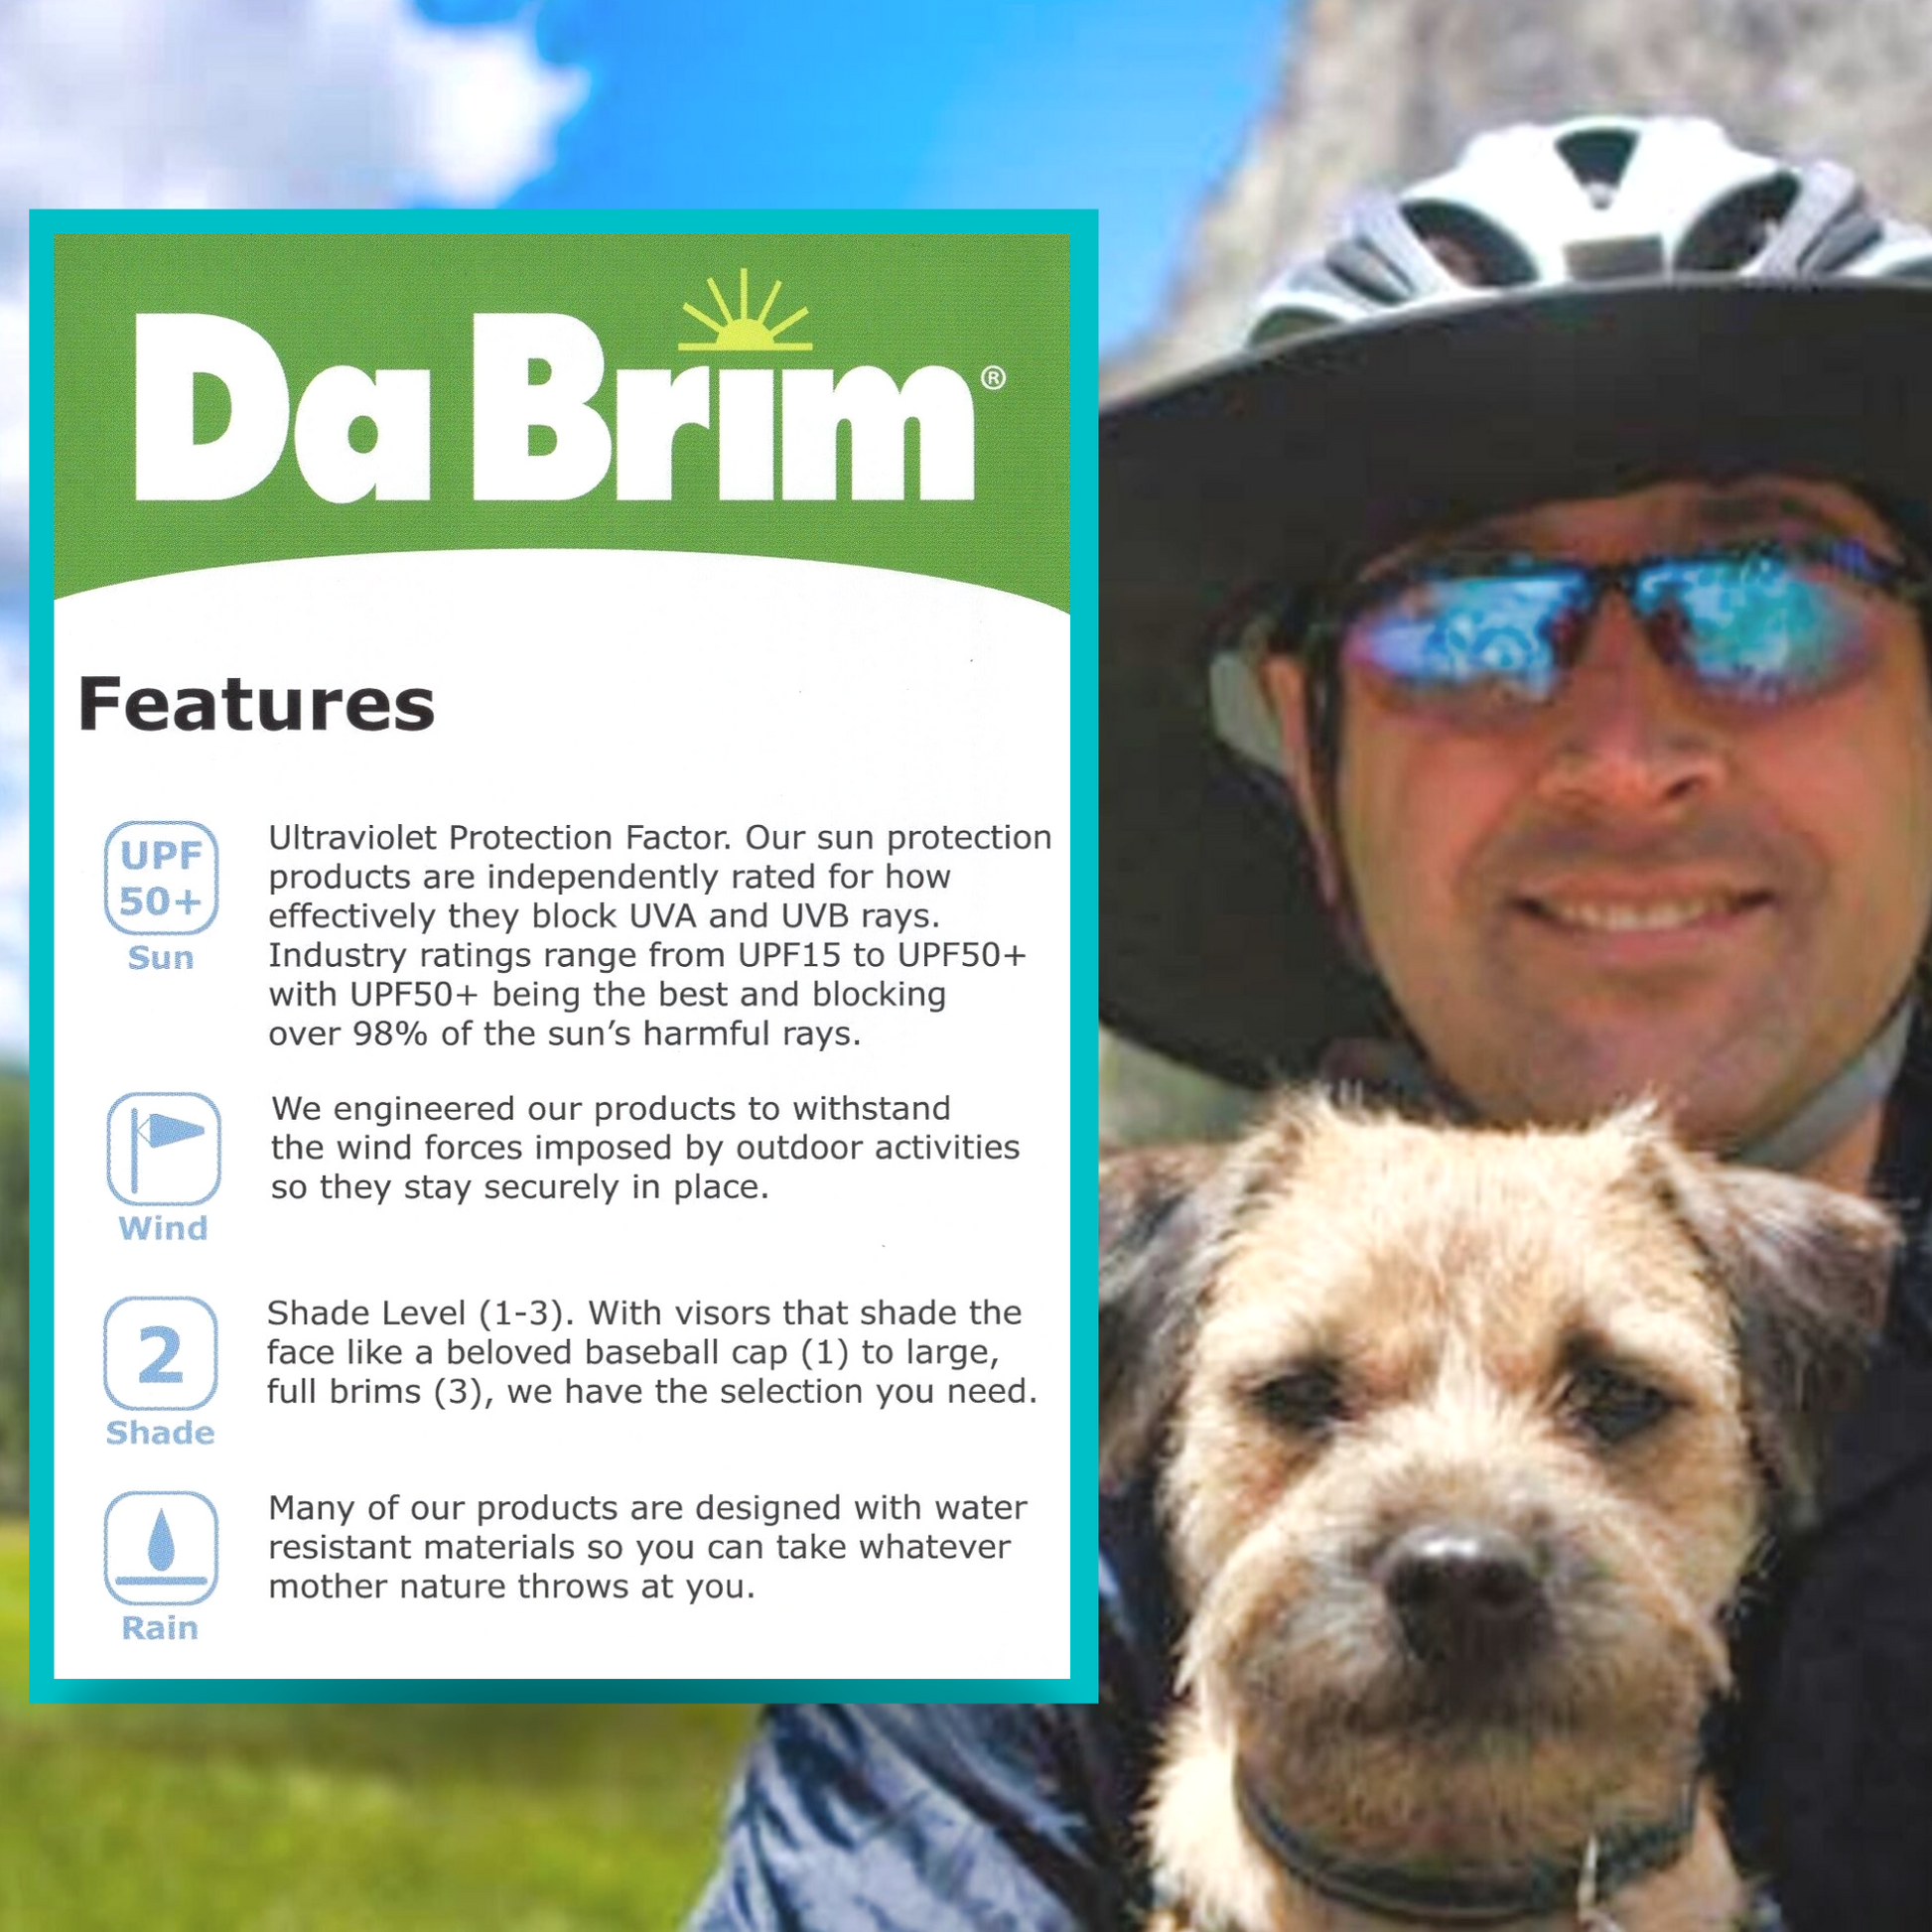 Da Brim Features Icons Explained.